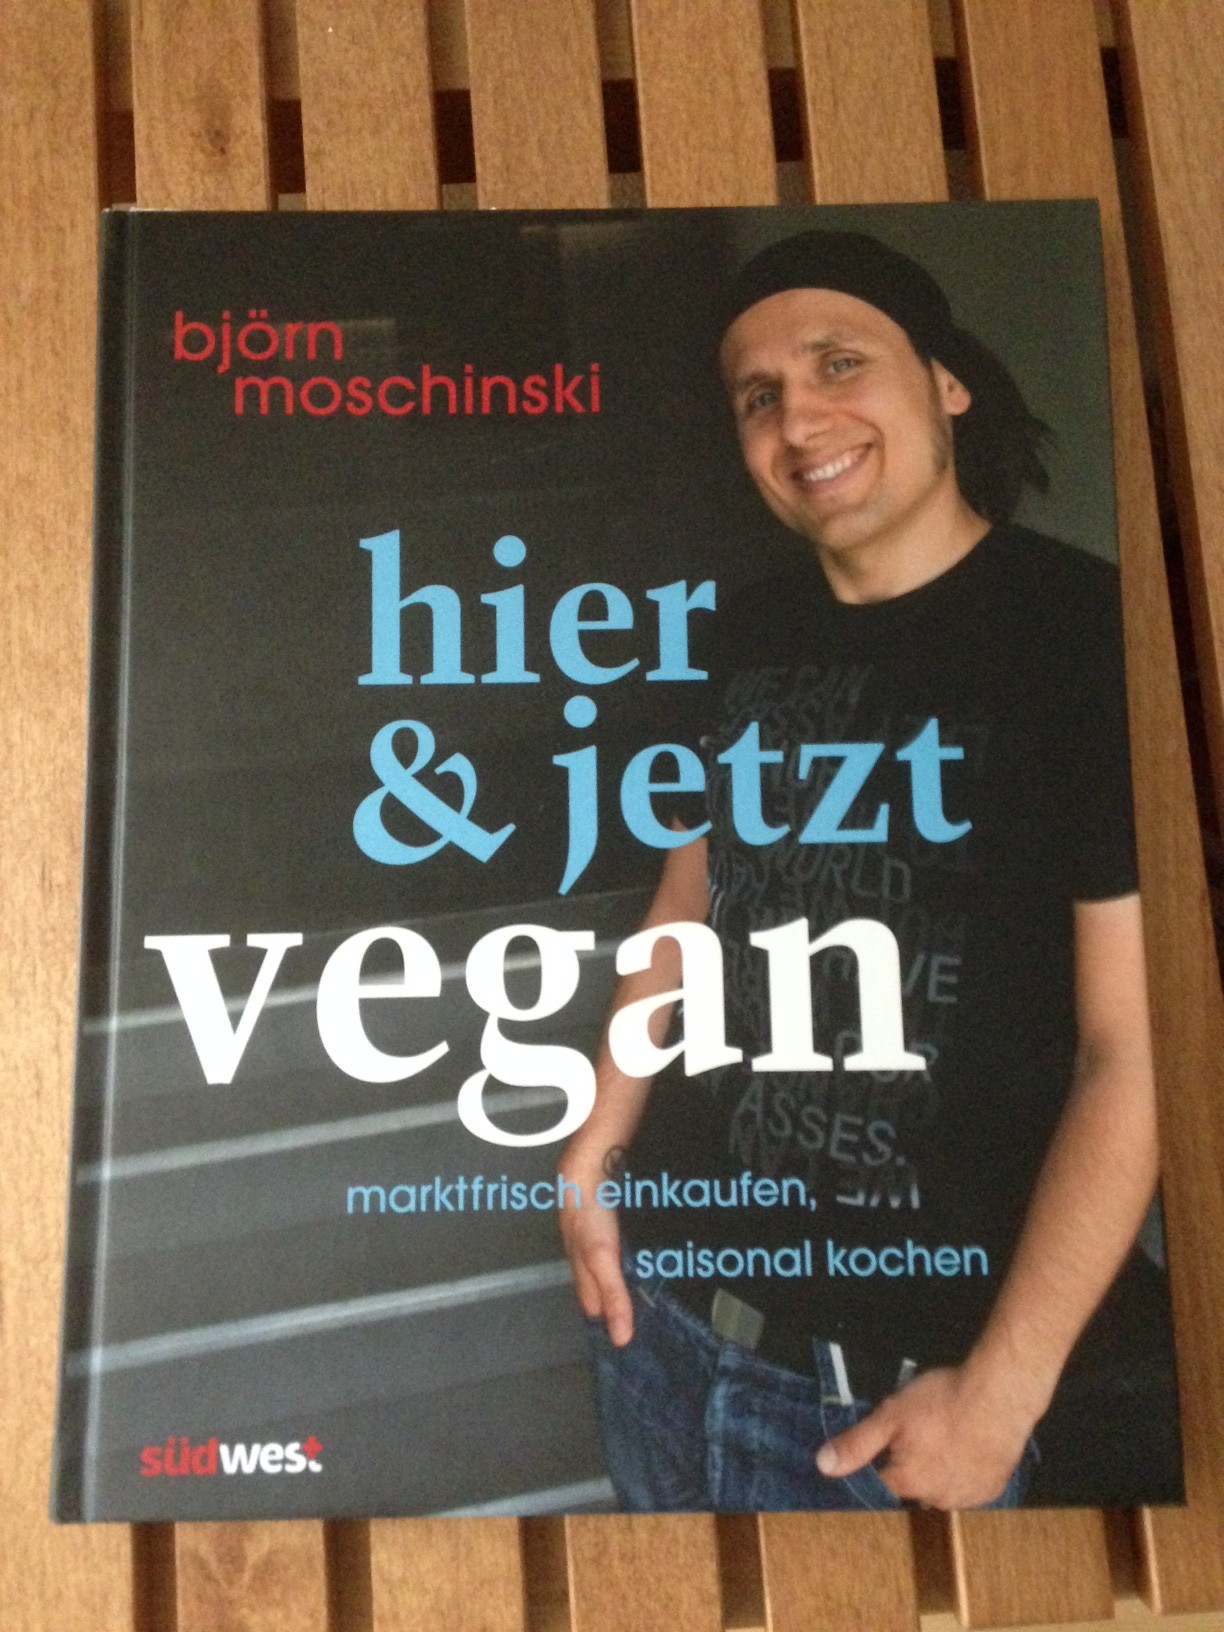 Rezension Kochbuch „Hier & jetzt vegan“ von Björn Moschinski